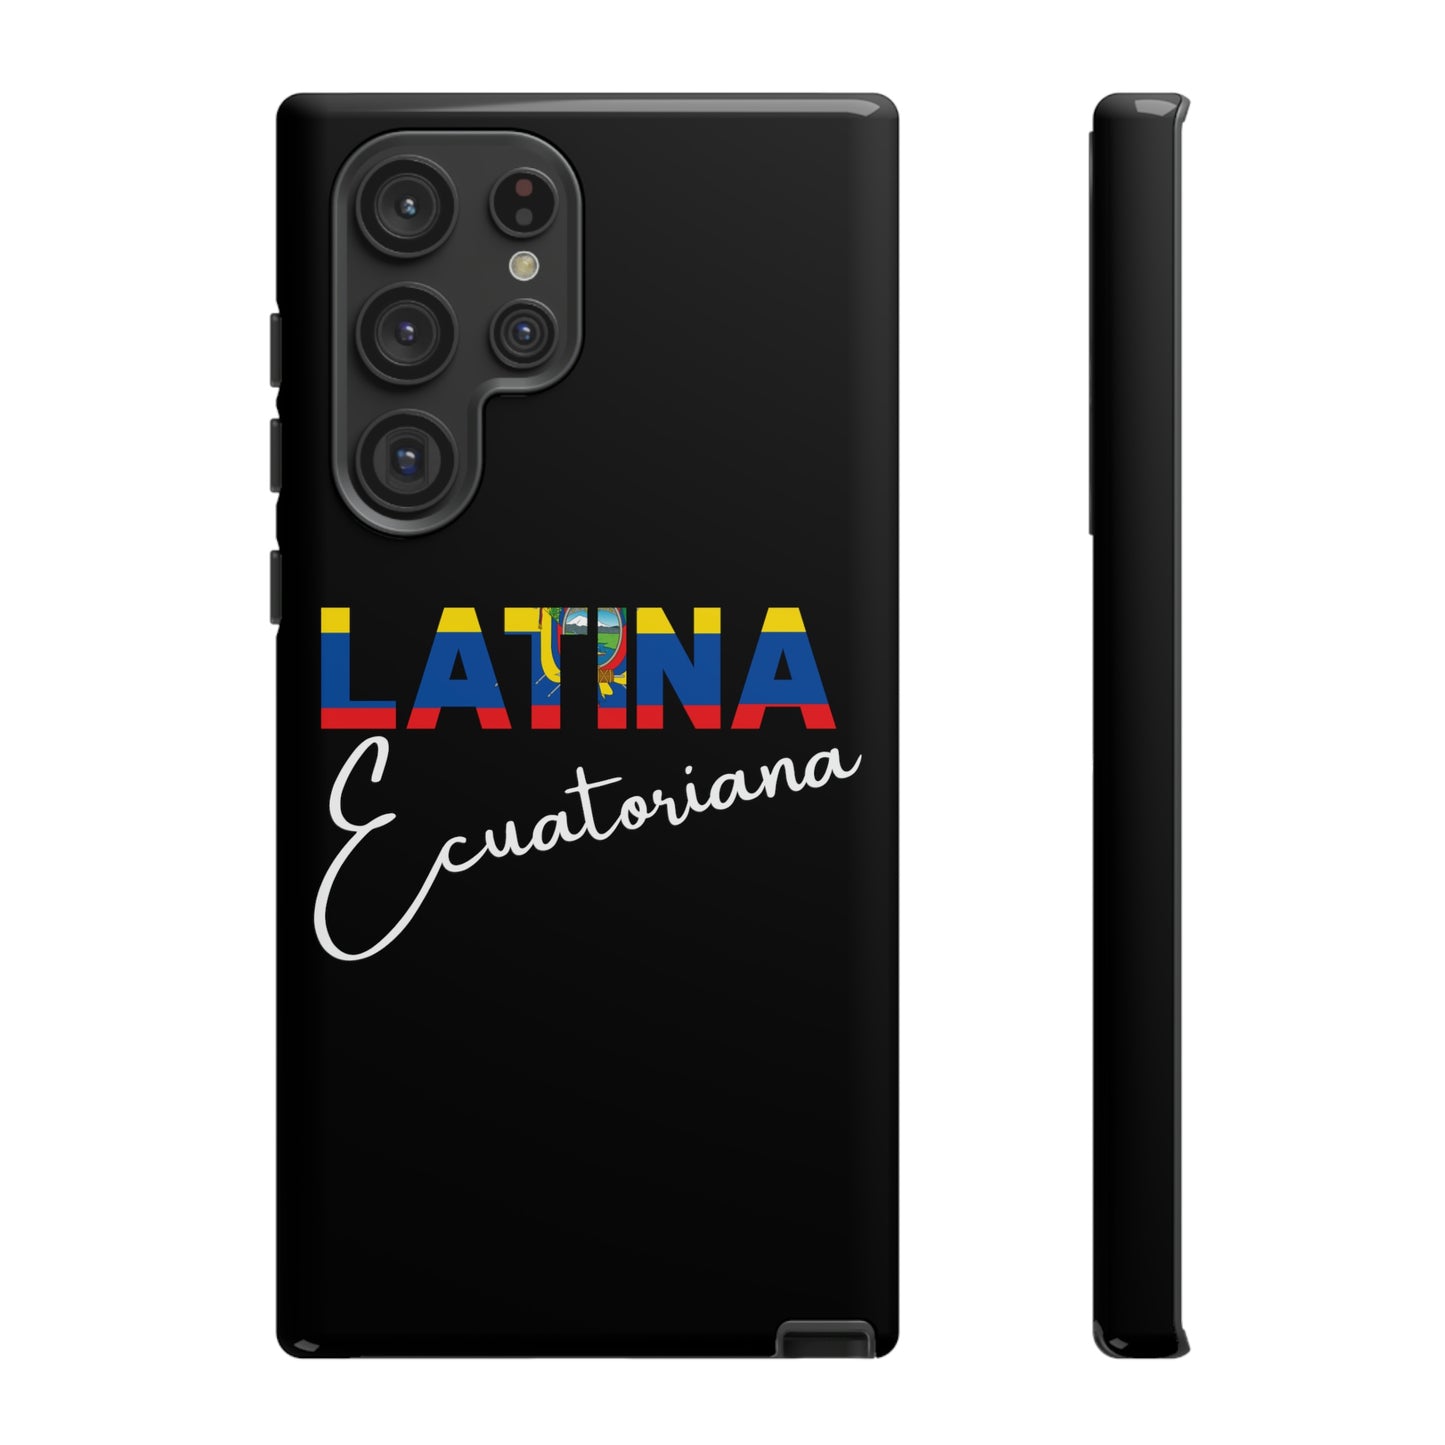 Latina Ecuatoriana, Tough Phone Case